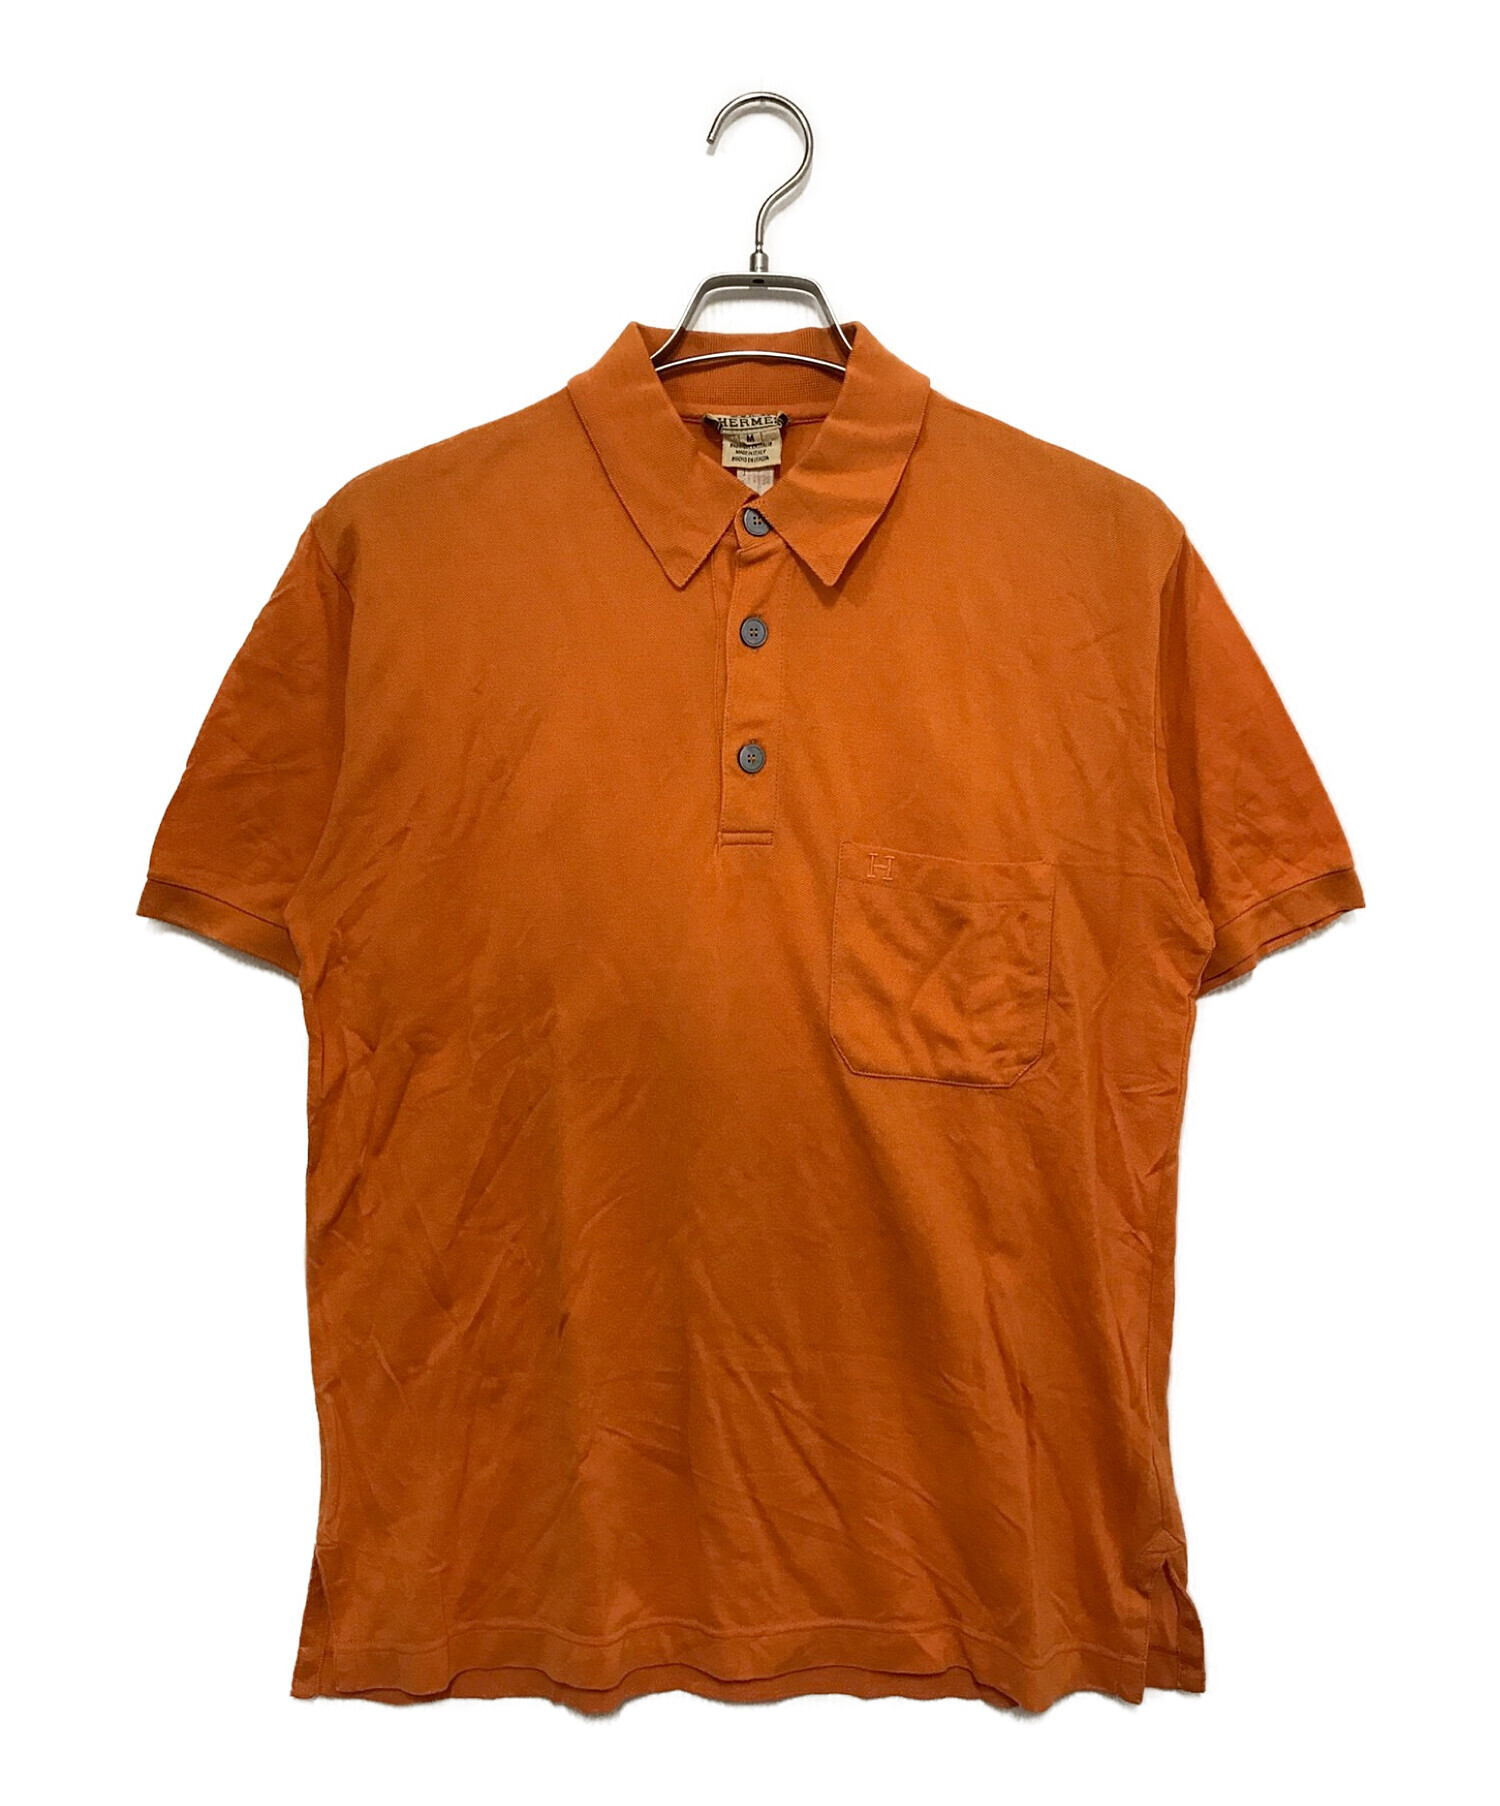 HERMES (エルメス) ポロシャツ オレンジ サイズ:M